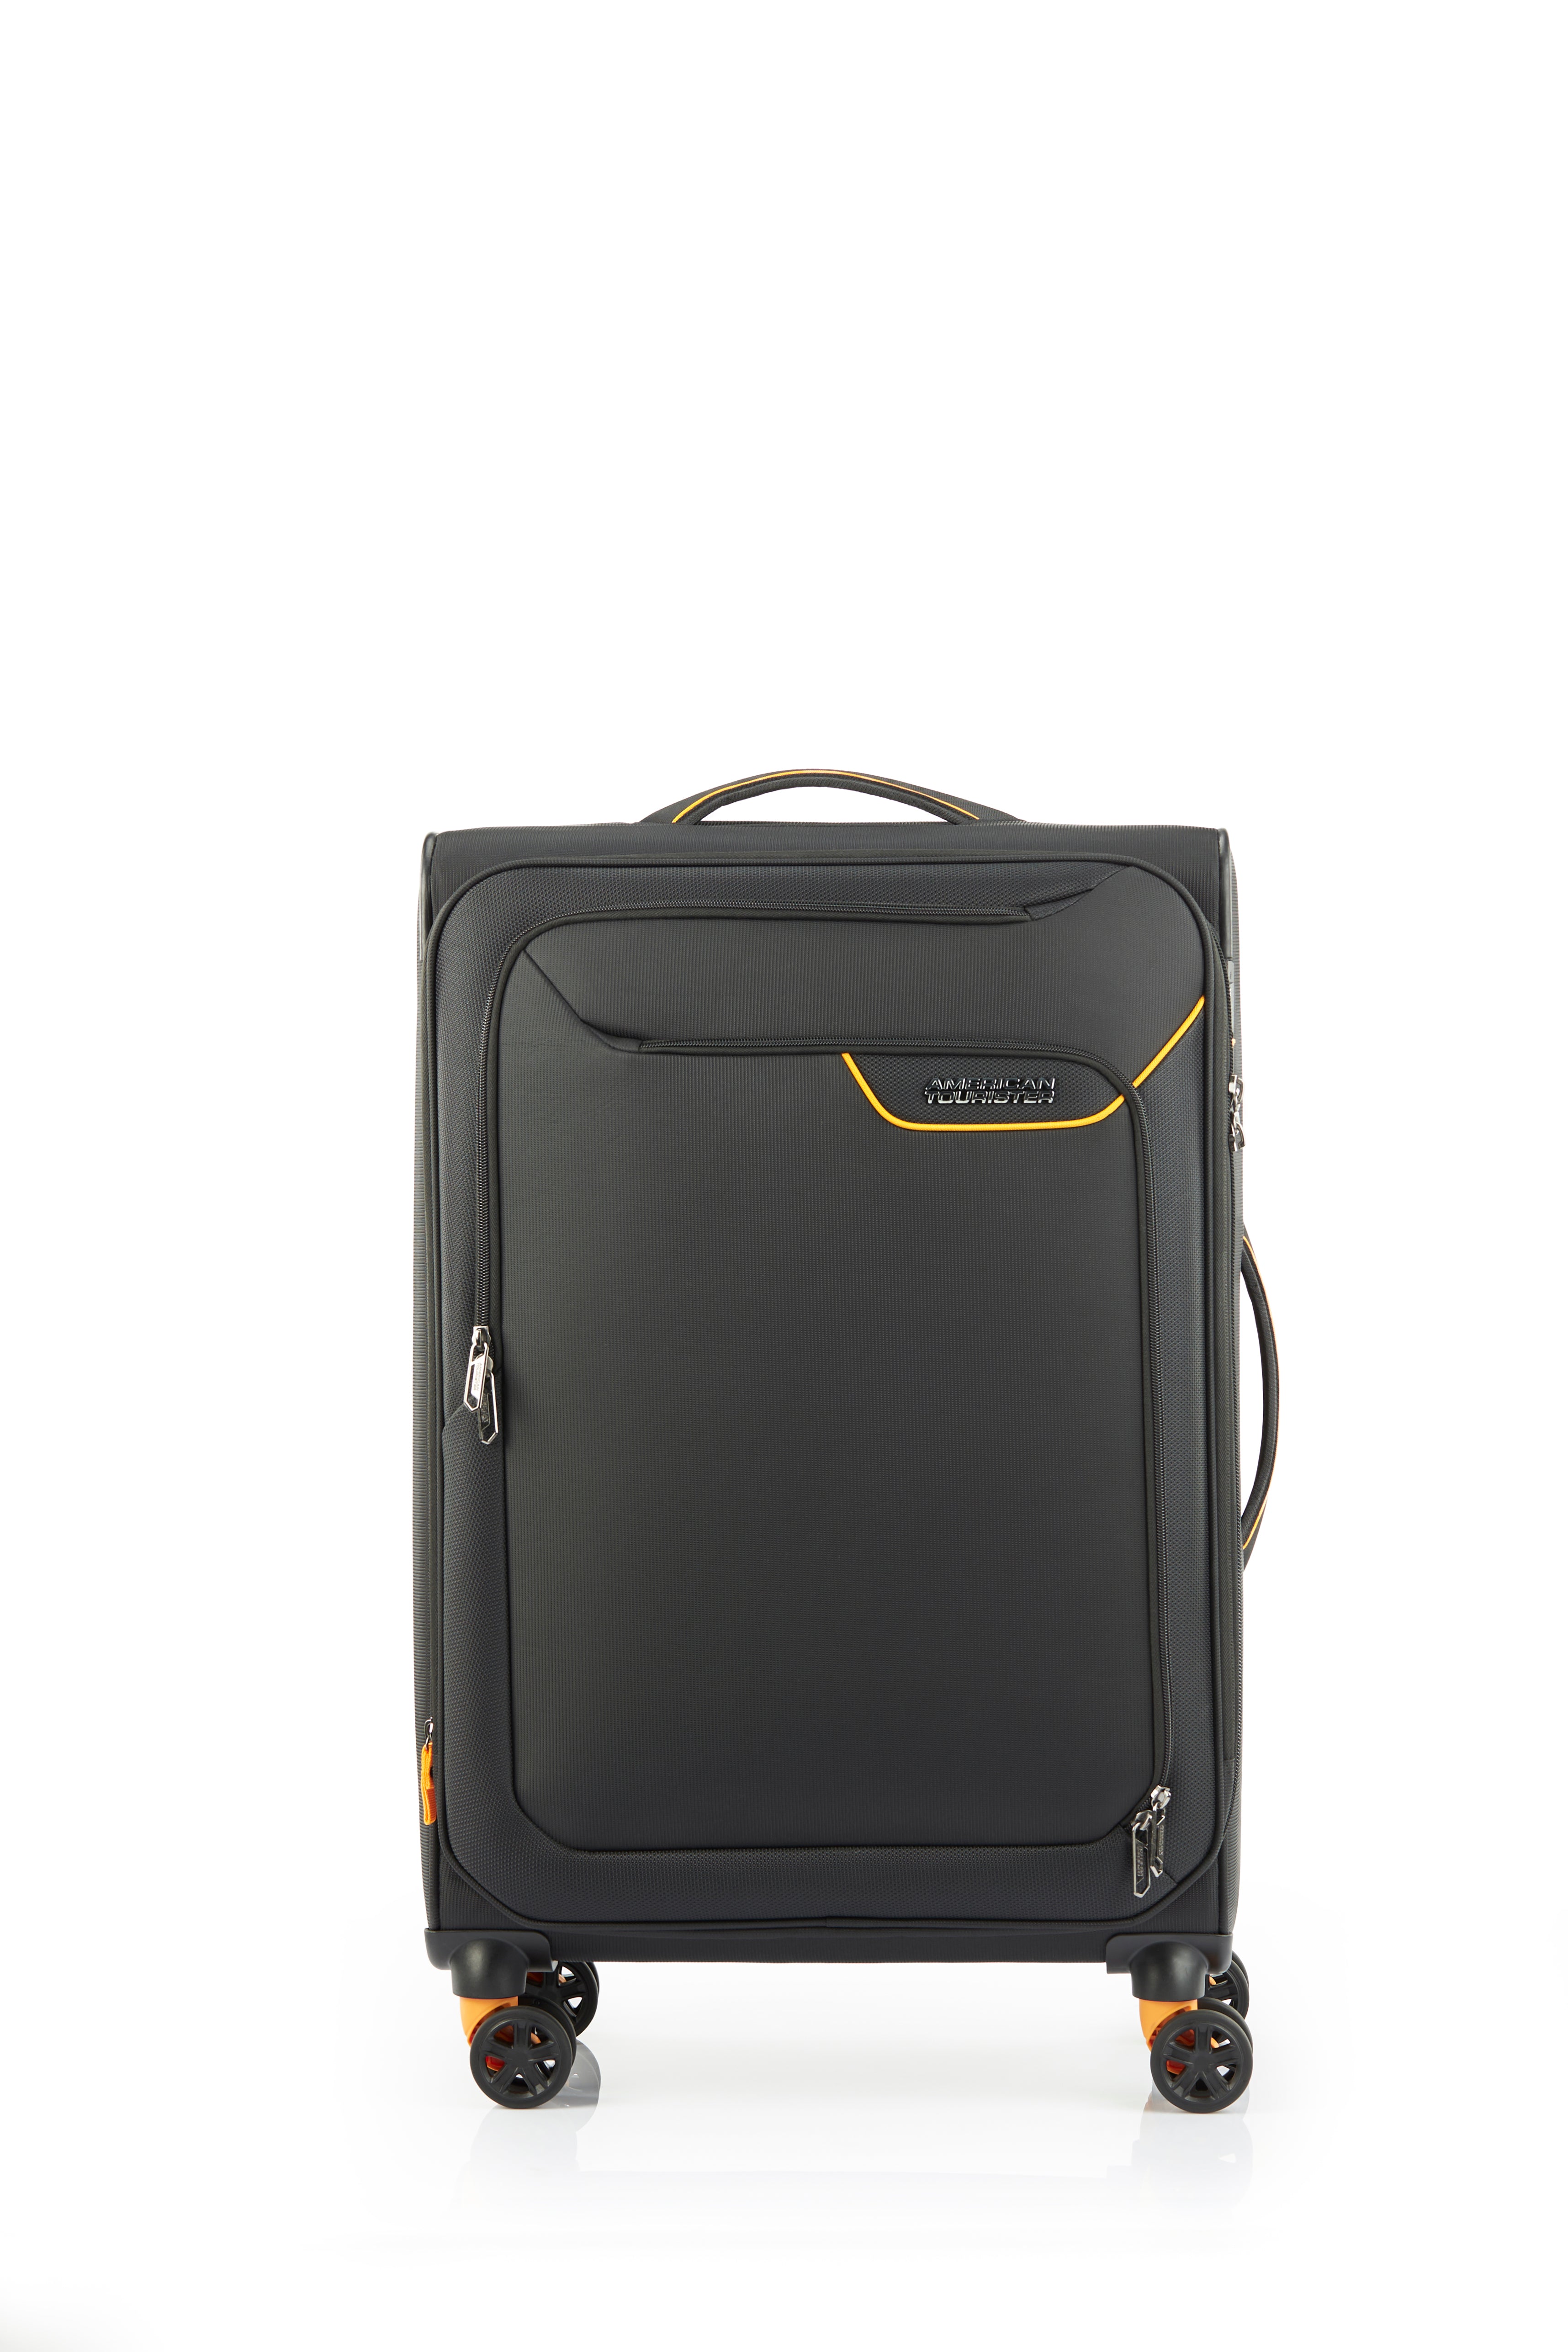 American Tourister - Applite ECO 71cm Medium Suitcase - Black/Must-2